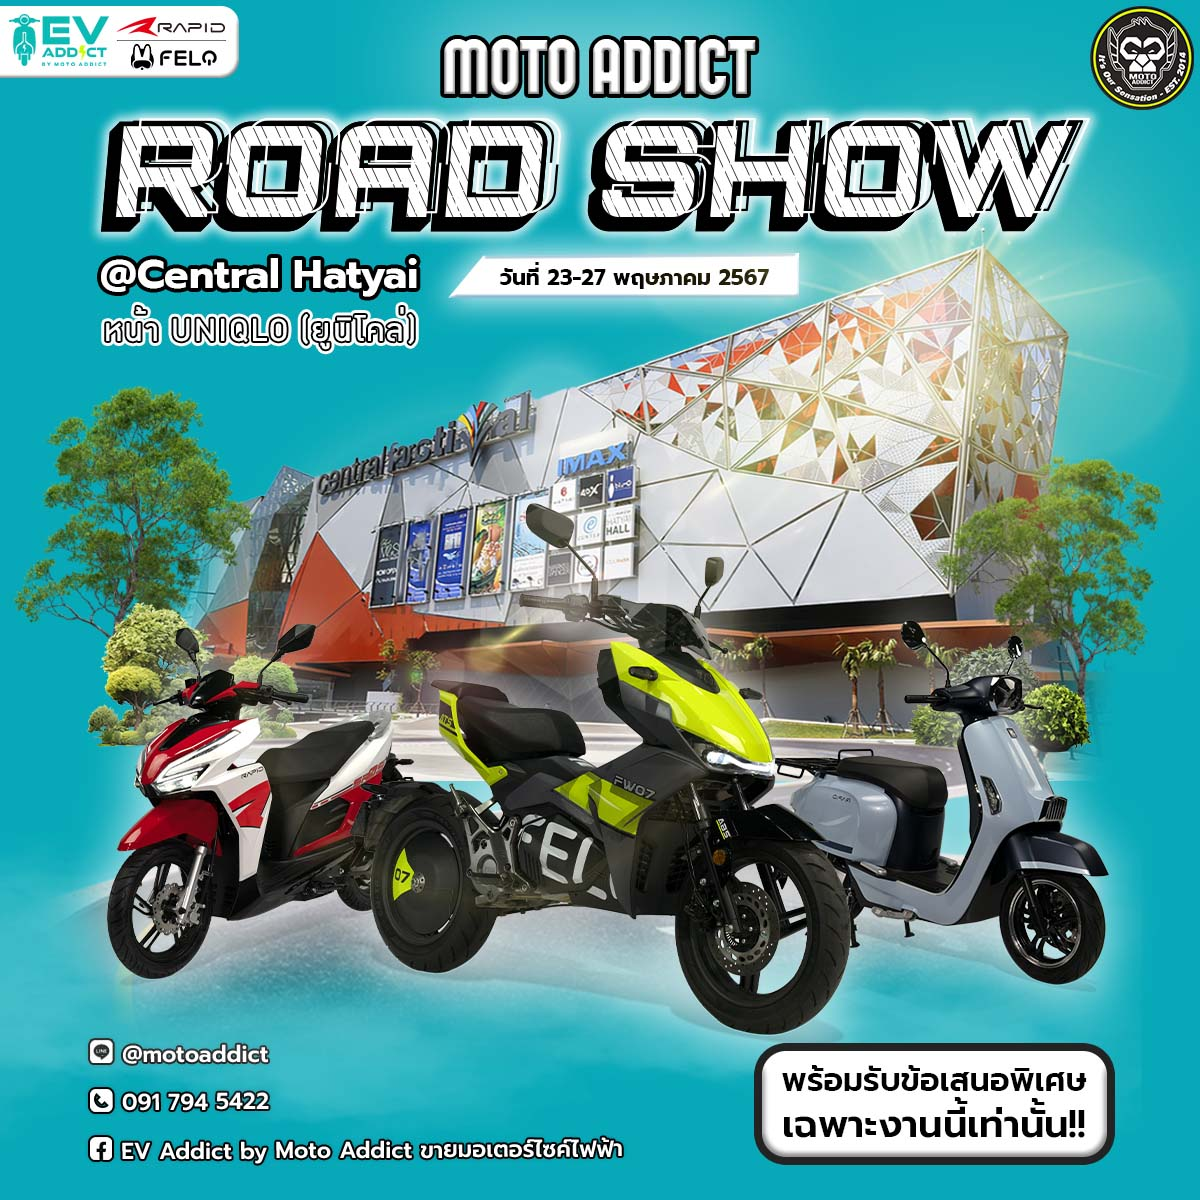 Moto Addict Road Show Felo และ Rapid